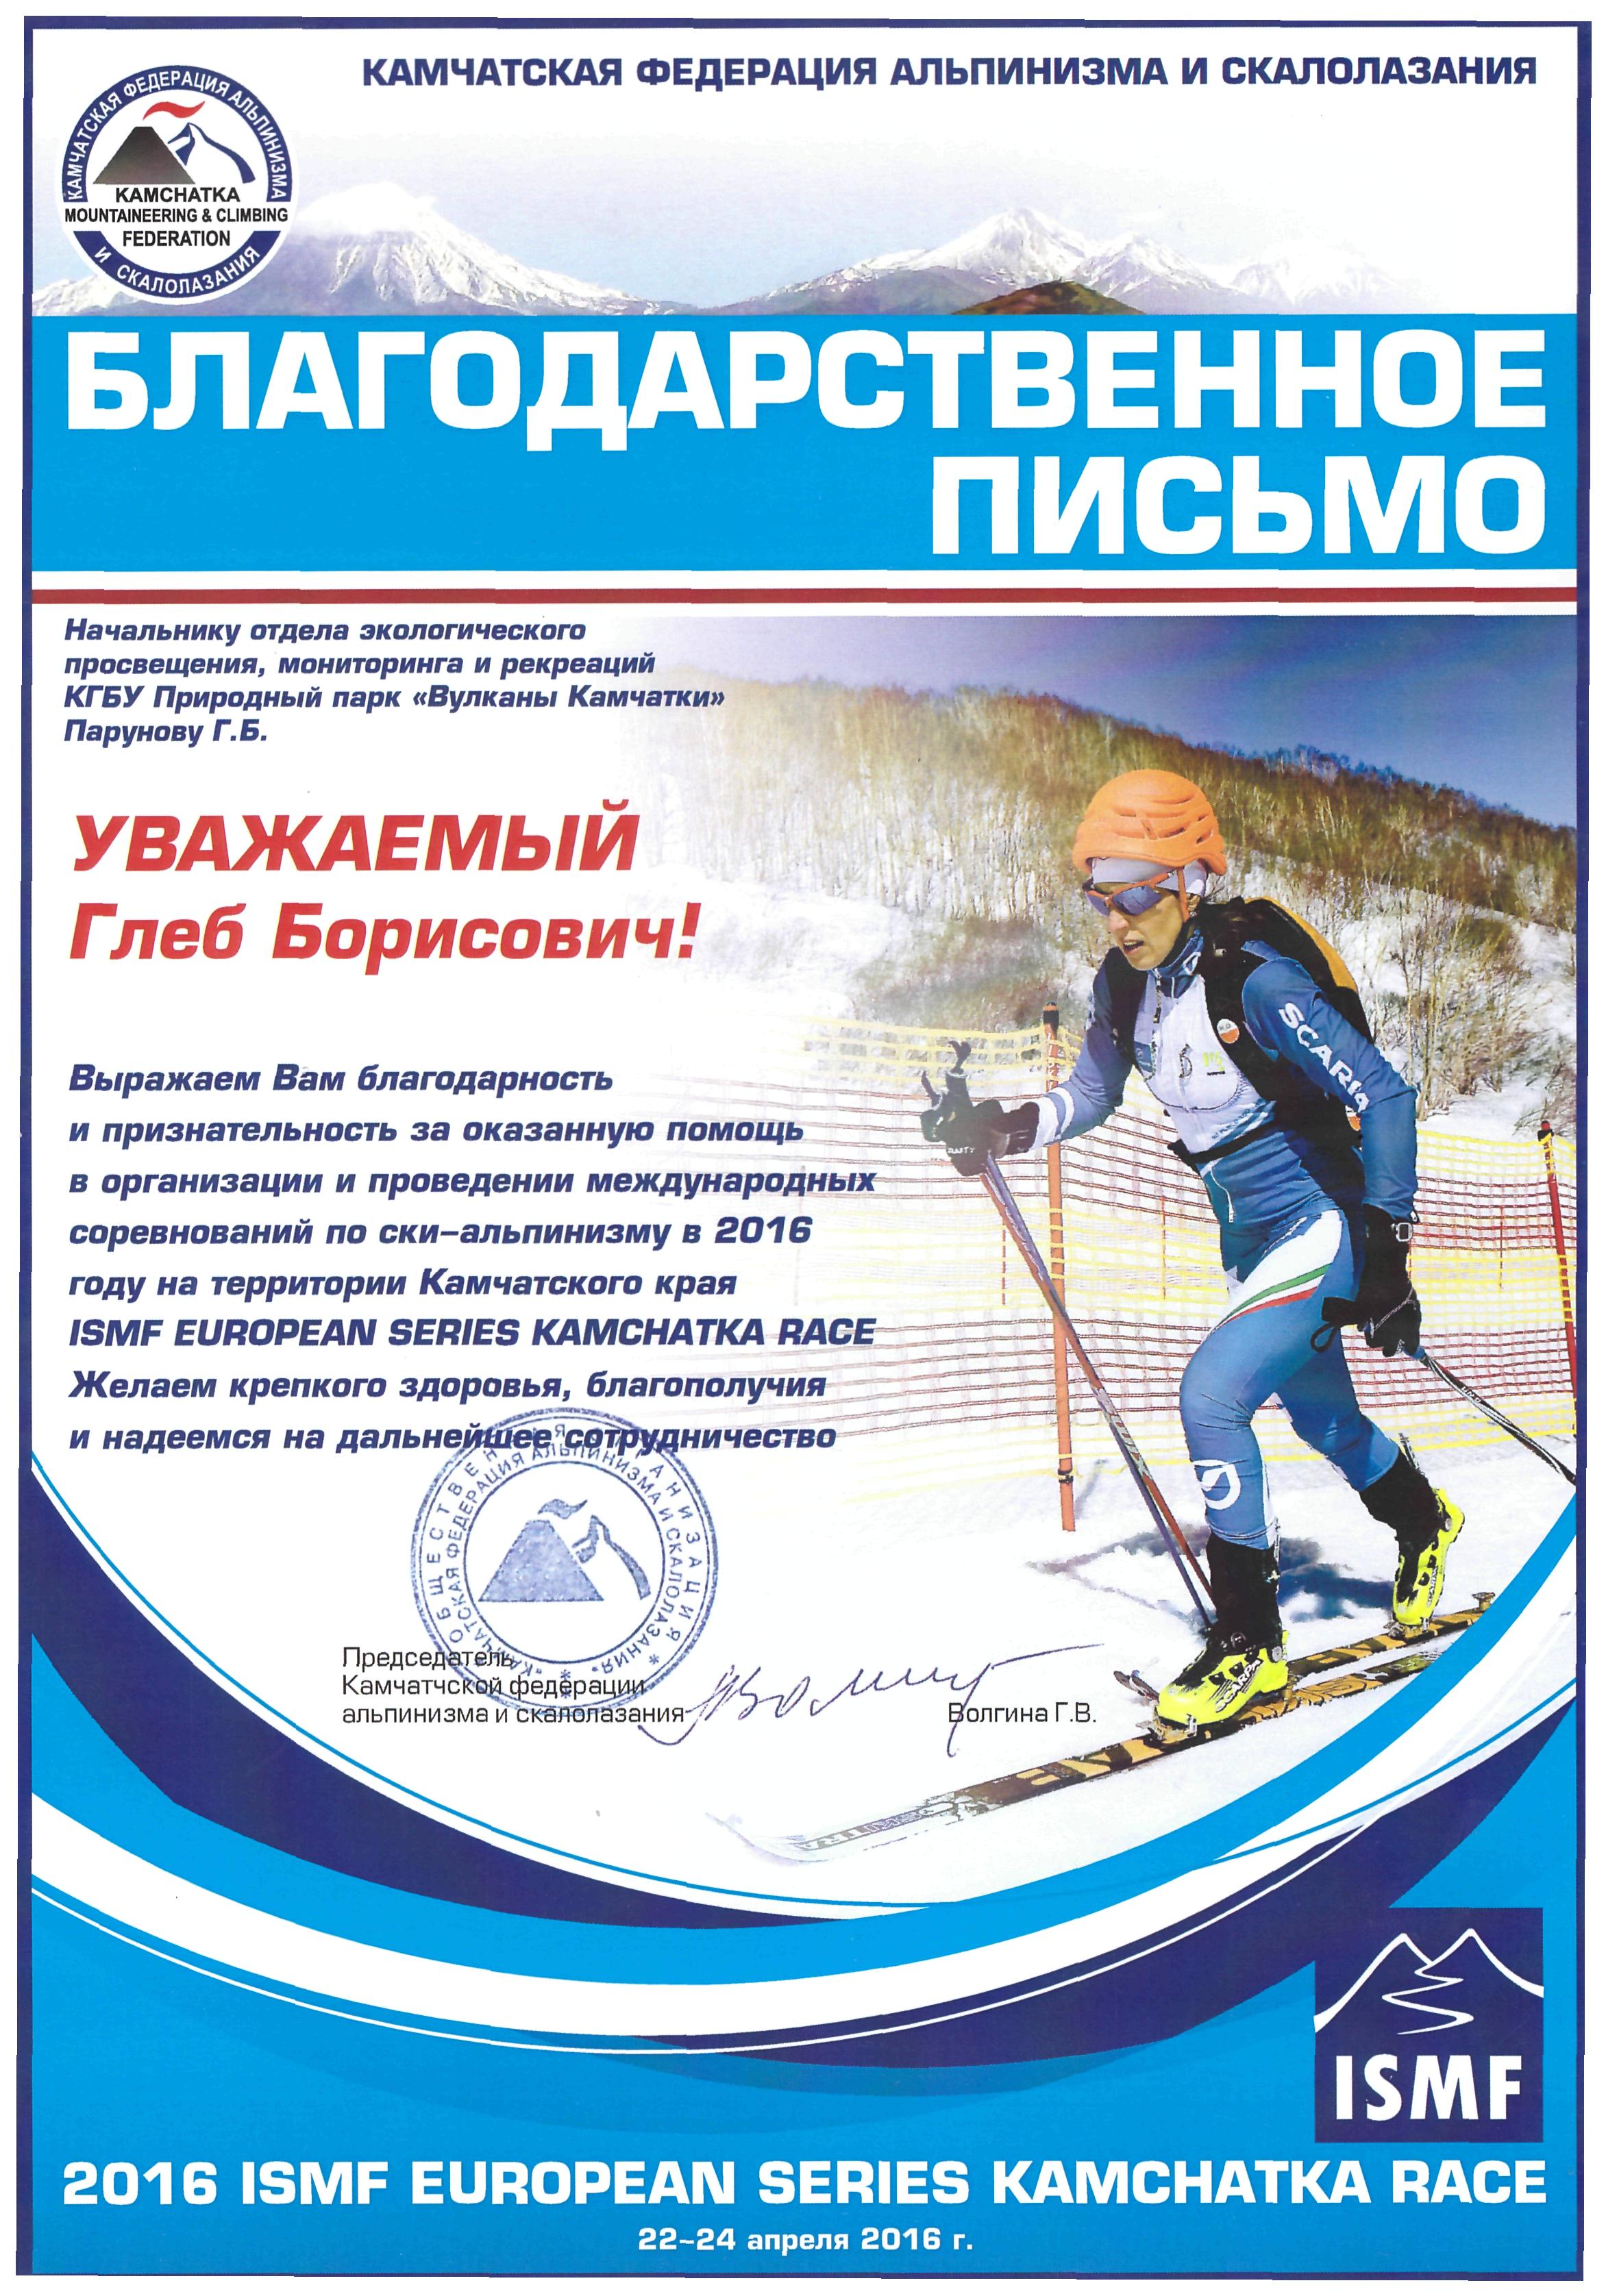 Благодарственное письмо за погмощь в организации и проведении международных соревнований по ски-альпинизму ISMF EUROPEAN SERIES KAMCHATKA RACE, 2016 год